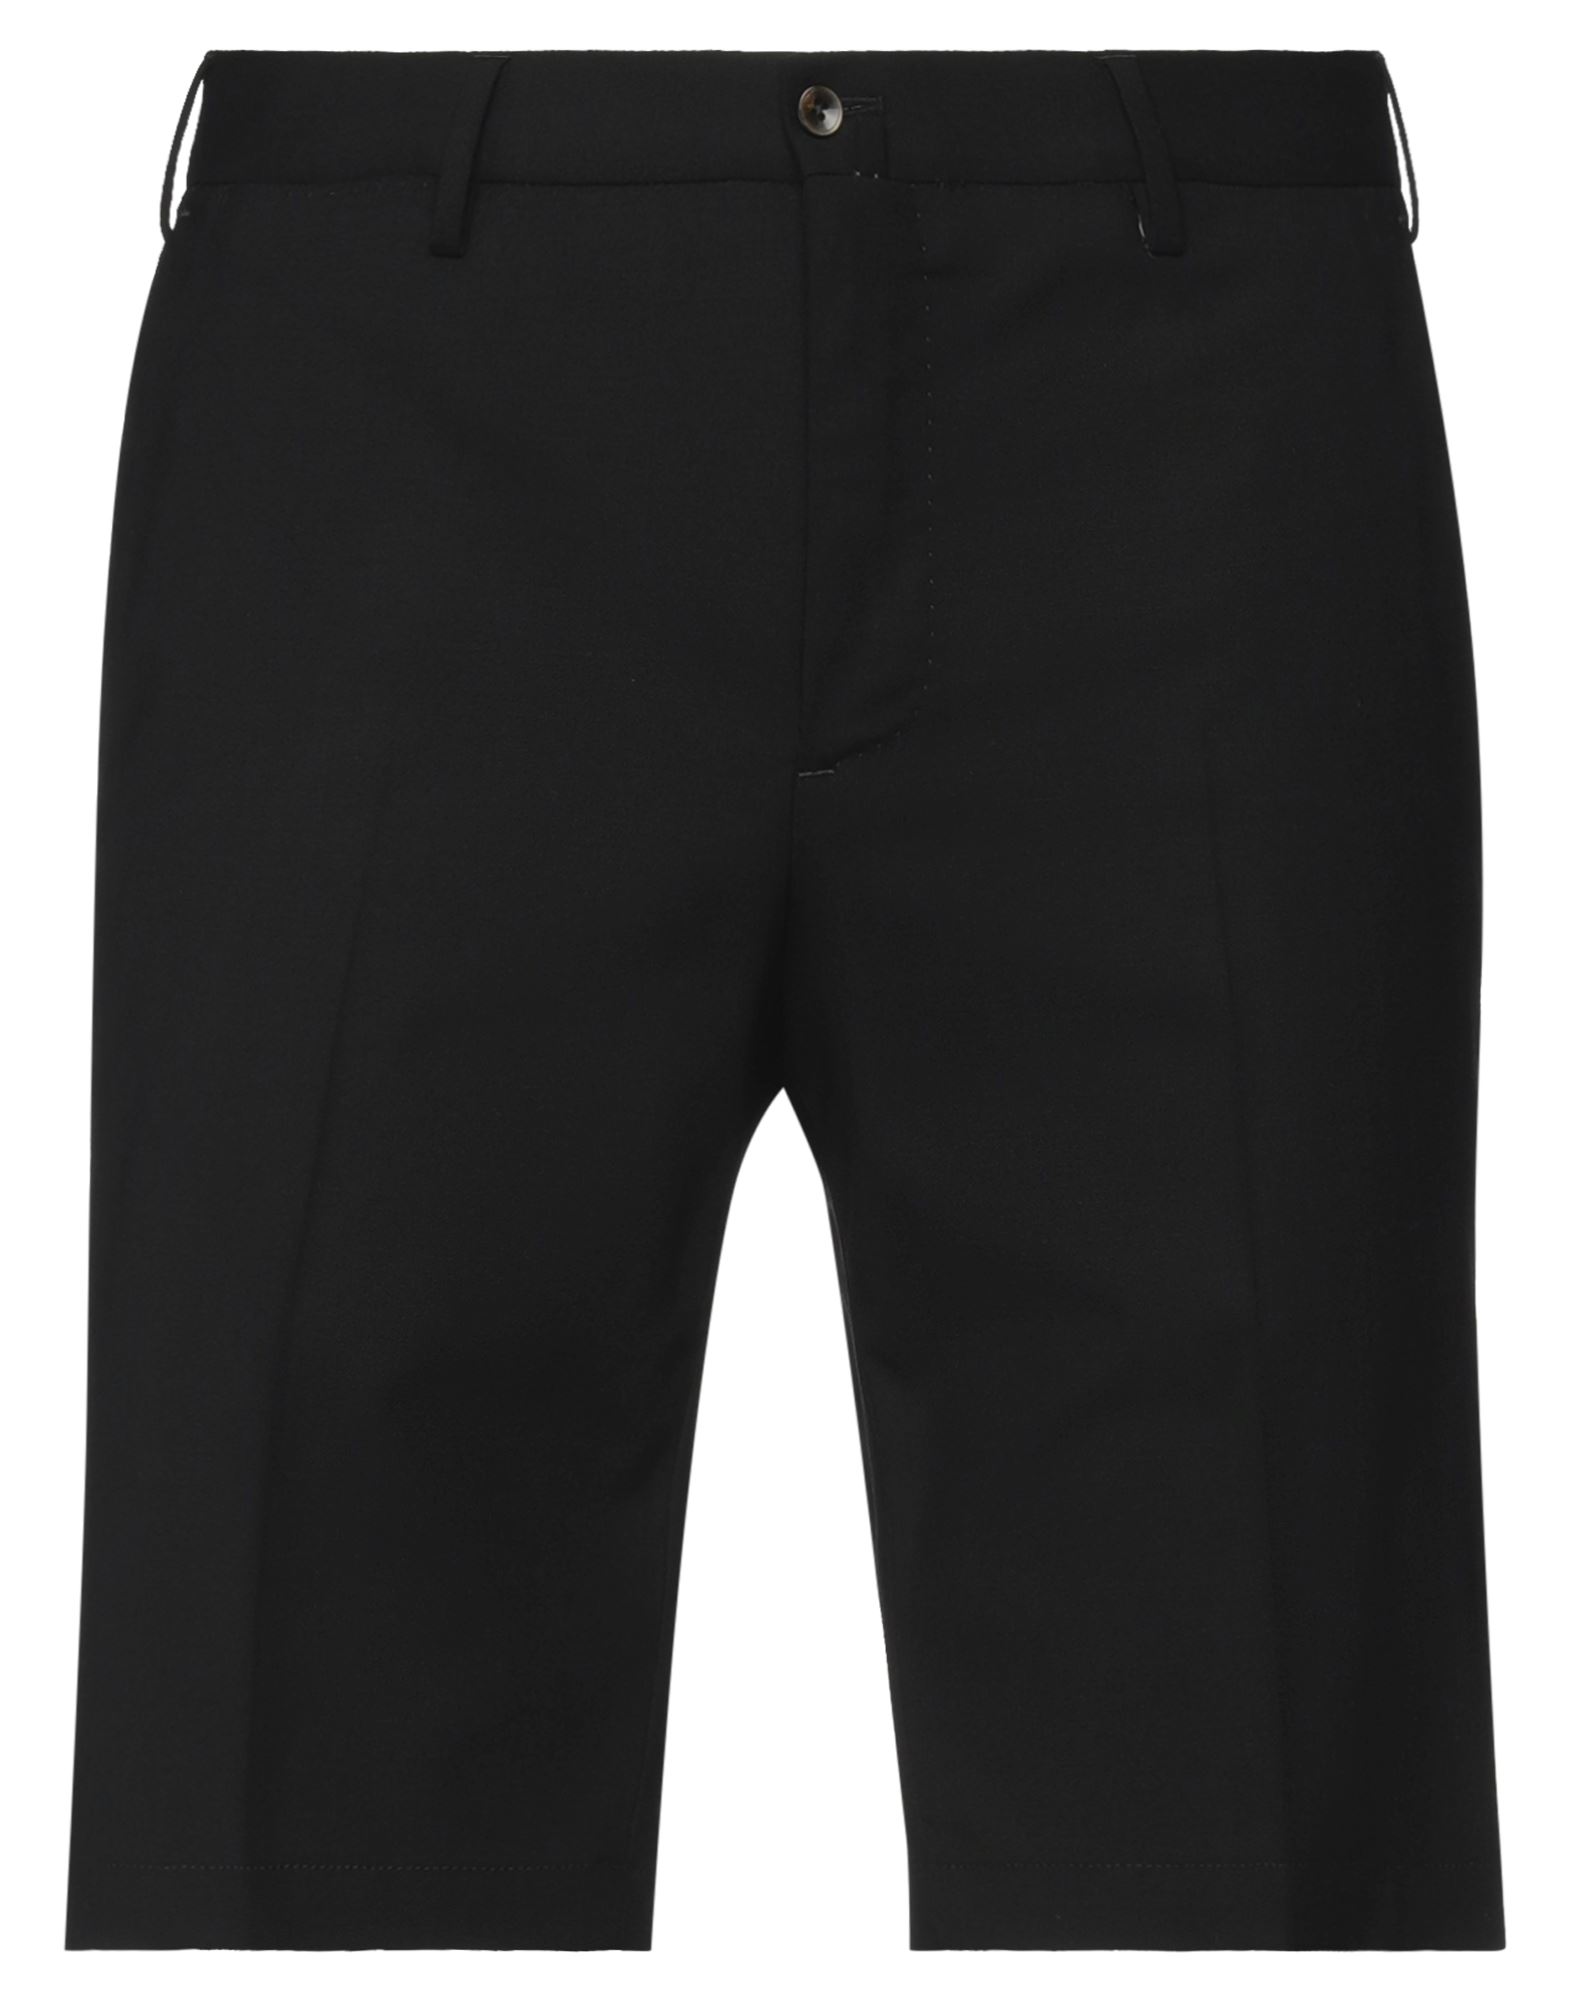 Pt Torino Man Shorts & Bermuda Shorts Black Size 36 Virgin Wool, Elastane